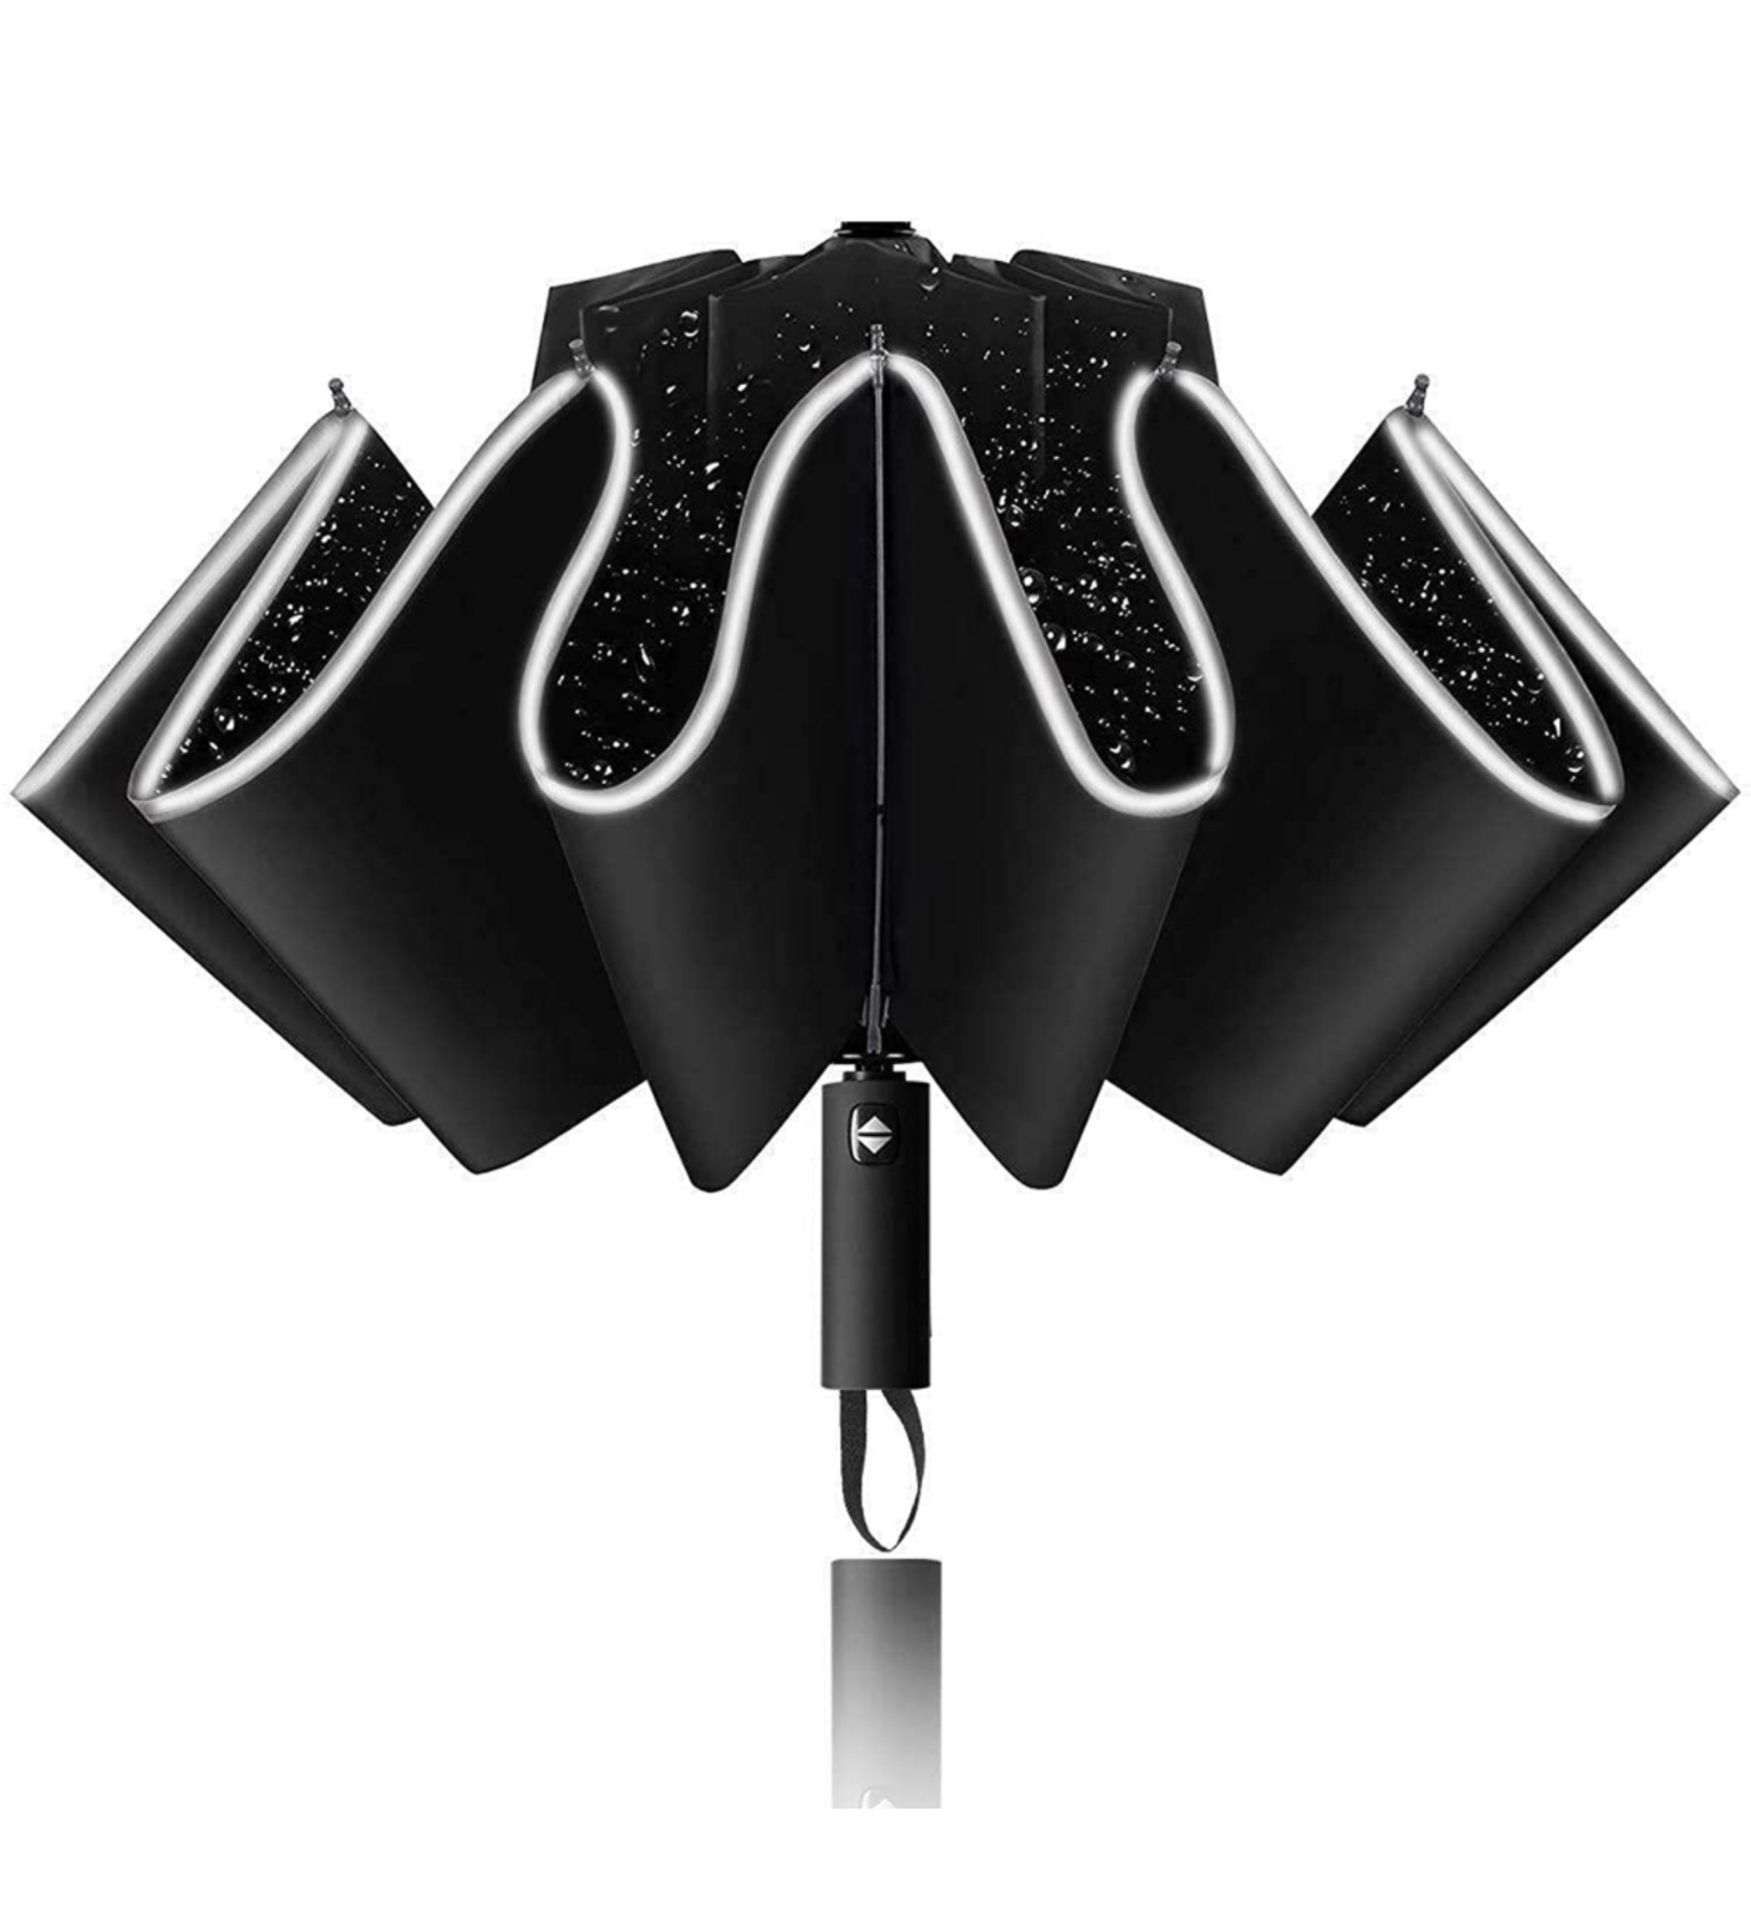 Bteng Inverted Windproof Umbrella